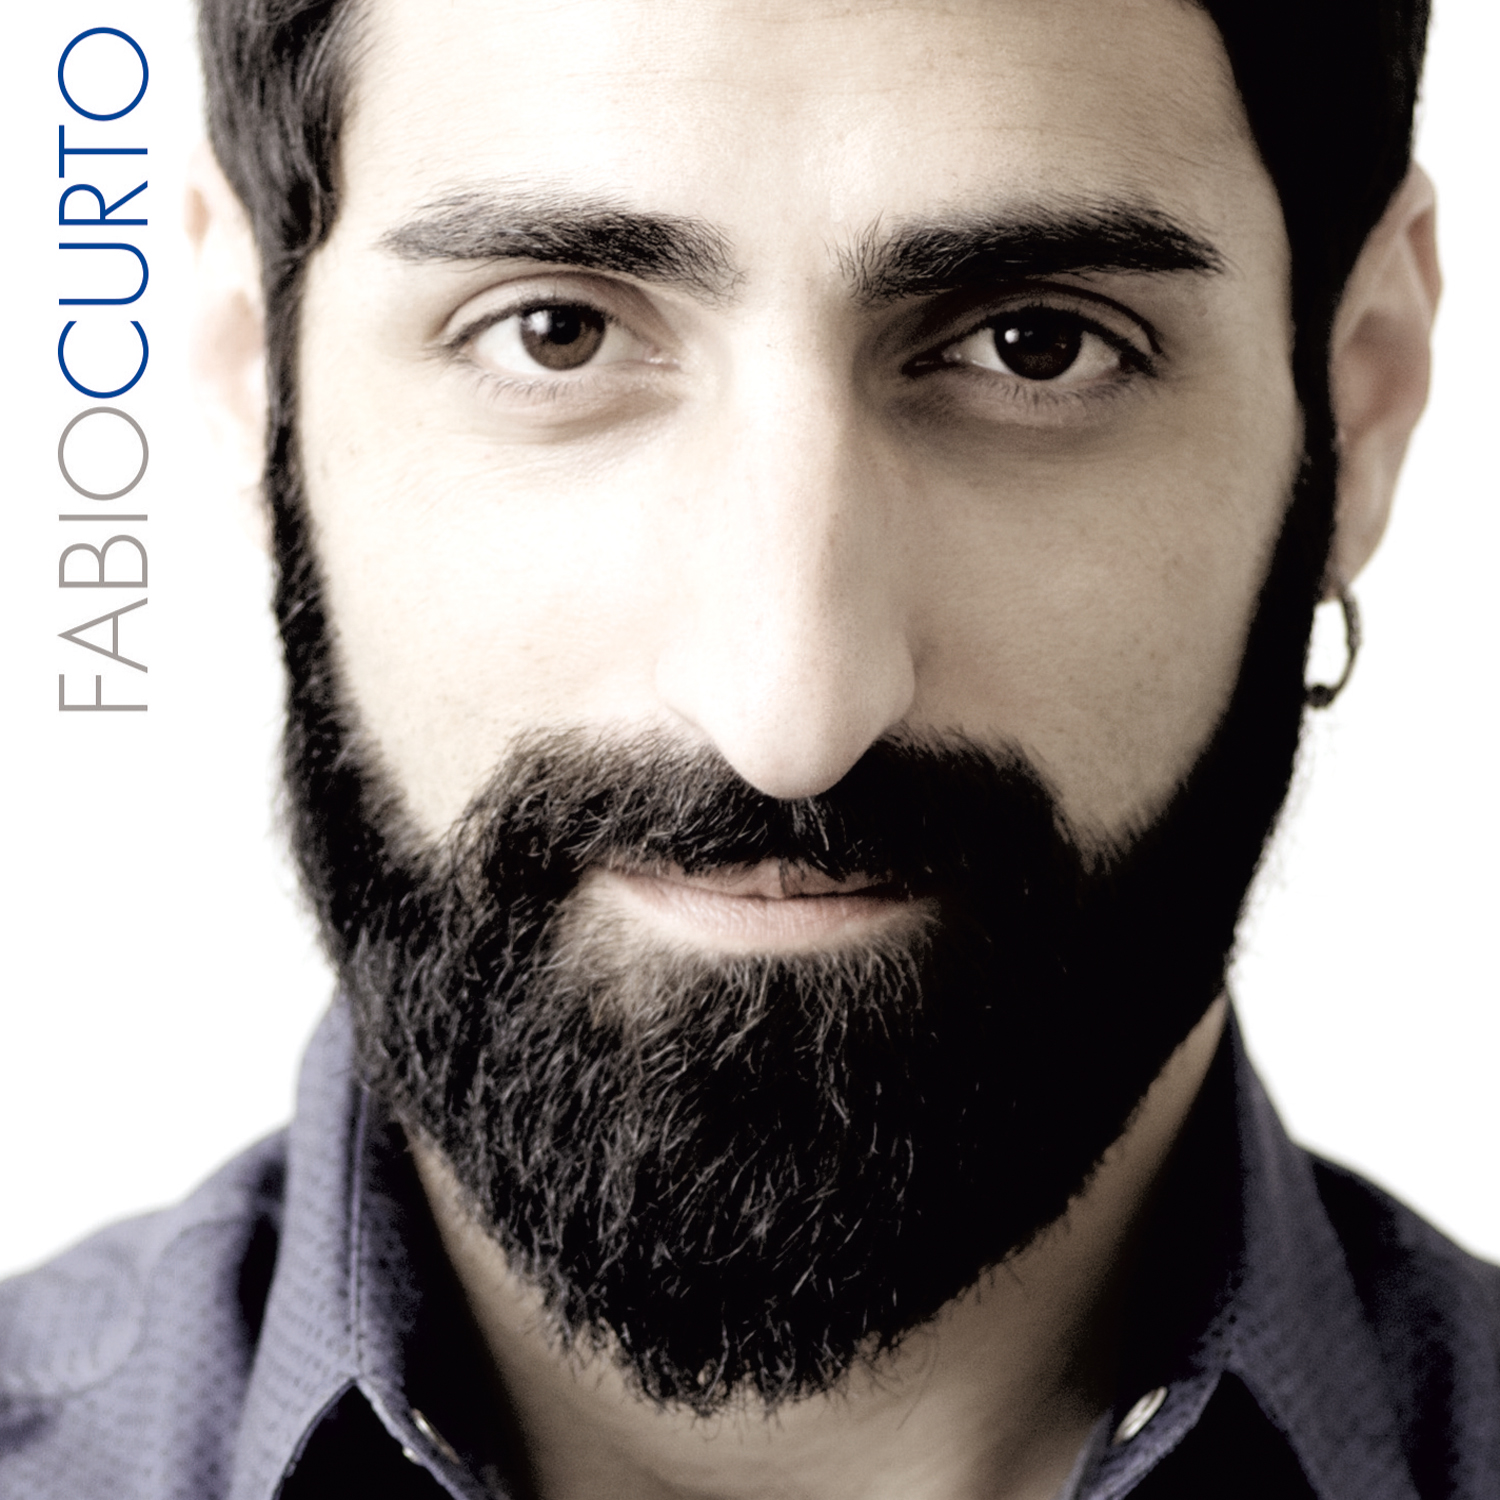 Fabio Curto: "Non mi assolvo" è il nuovo singolo